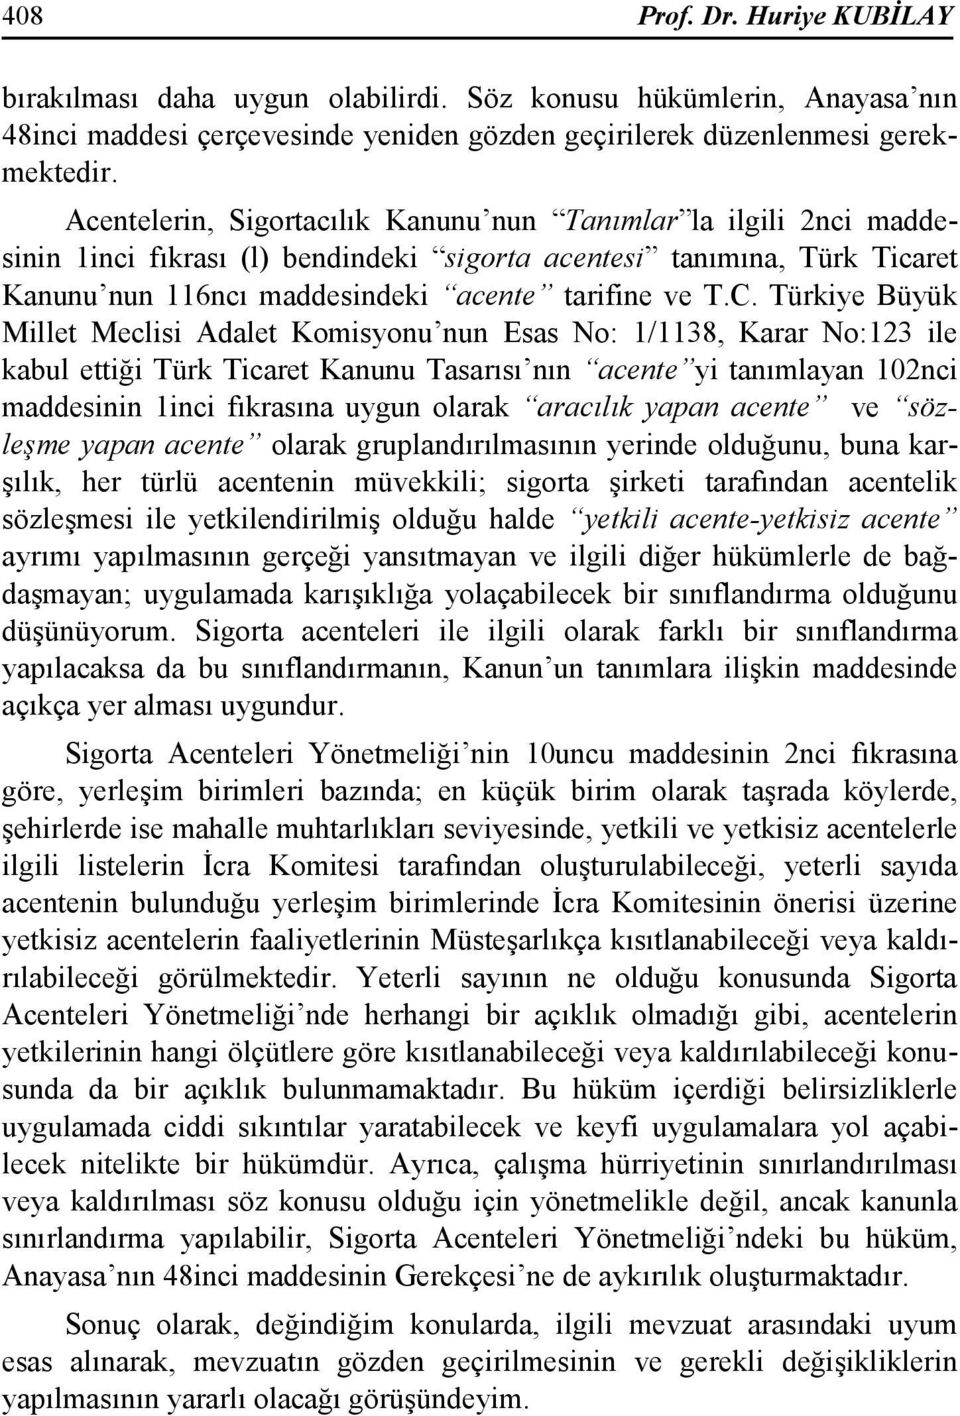 Türkiye Büyük Millet Meclisi Adalet Komisyonu nun Esas No: 1/1138, Karar No:123 ile kabul ettiği Türk Ticaret Kanunu Tasarısı nın acente yi tanımlayan 102nci maddesinin 1inci fıkrasına uygun olarak